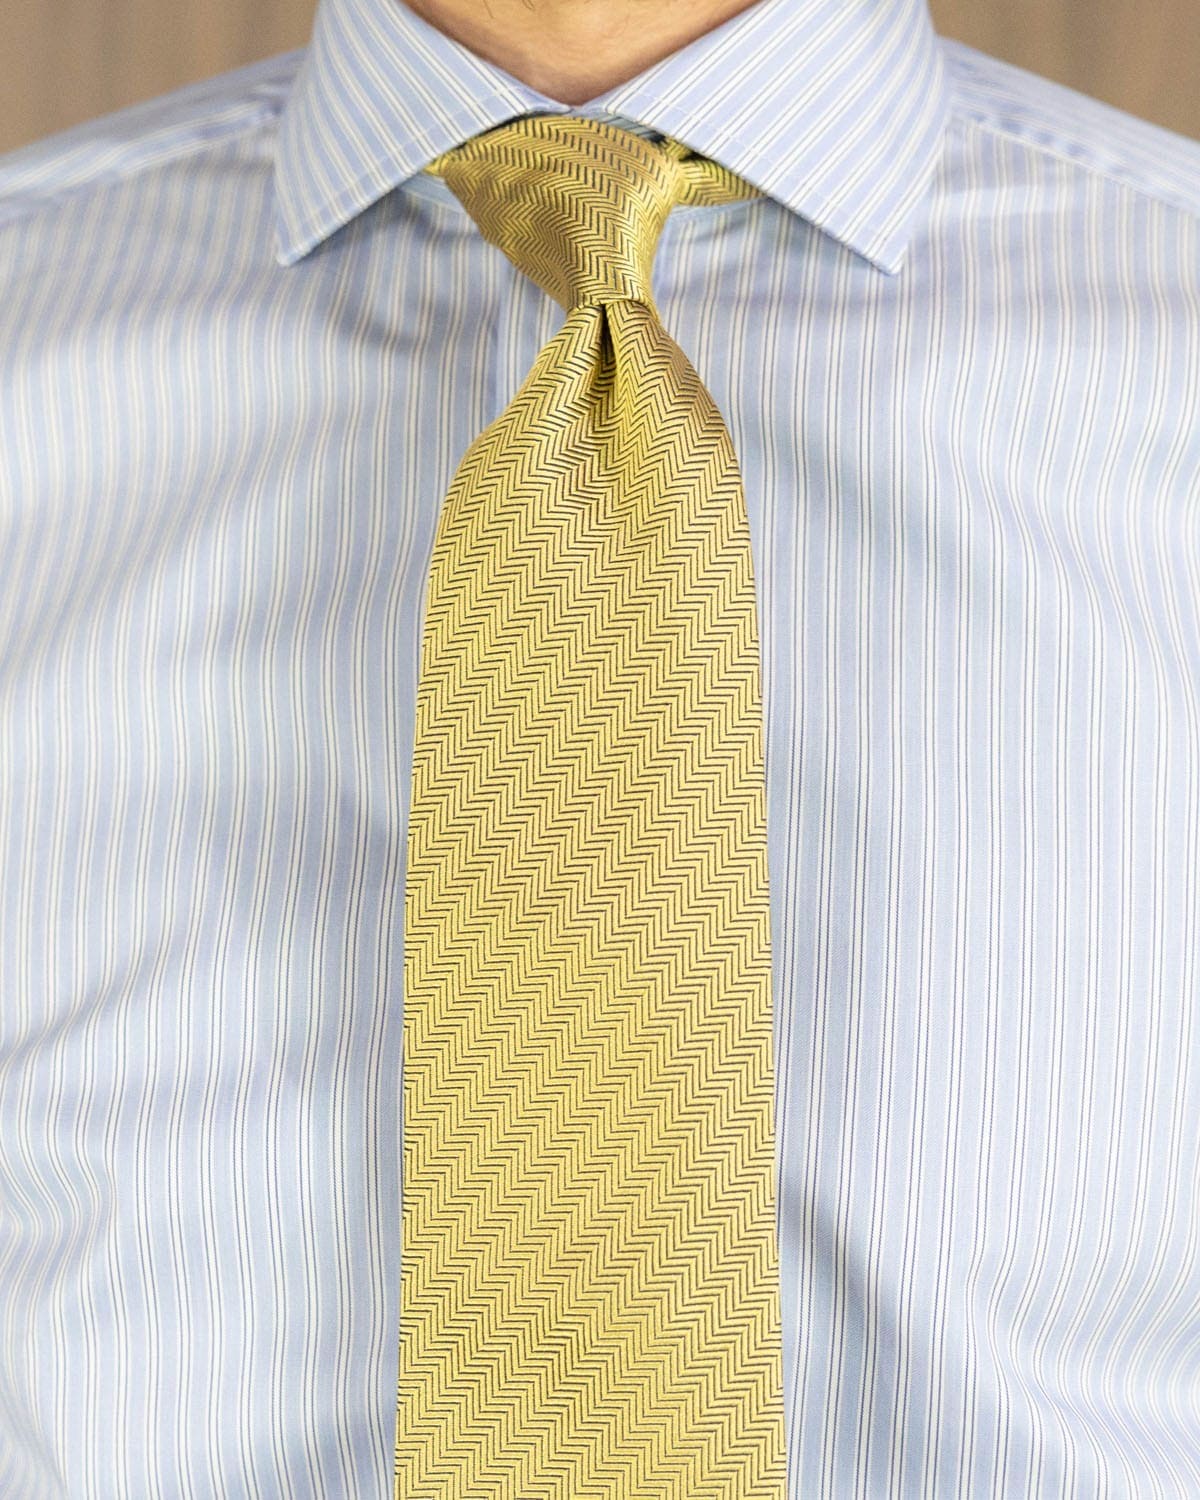 Yellow Herringbone Woven Silk Tie